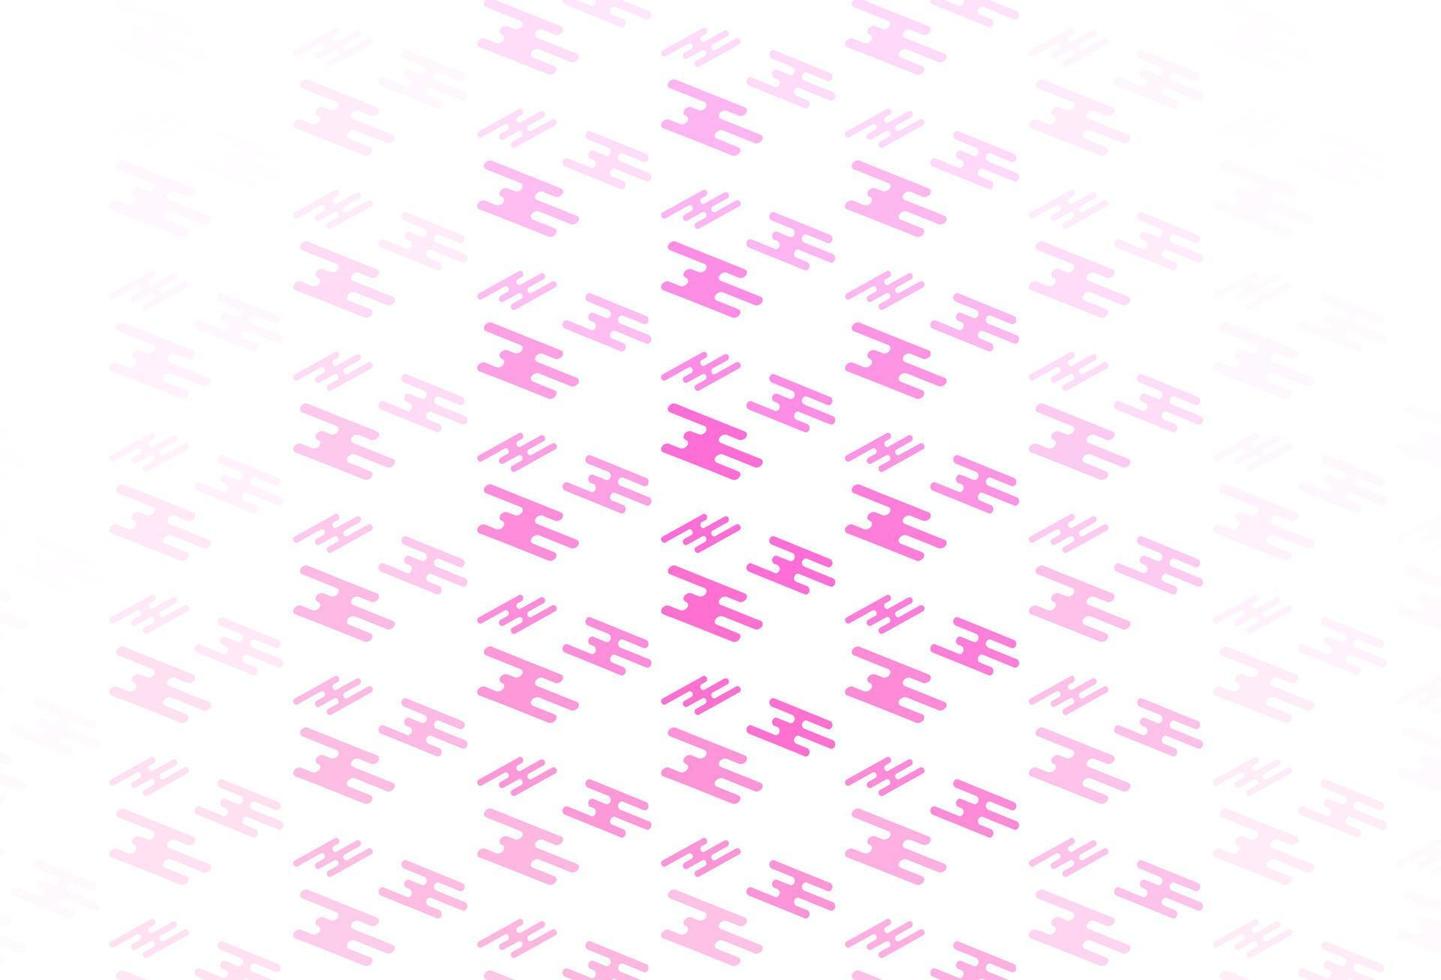 trama vettoriale rosa chiaro con linee colorate.